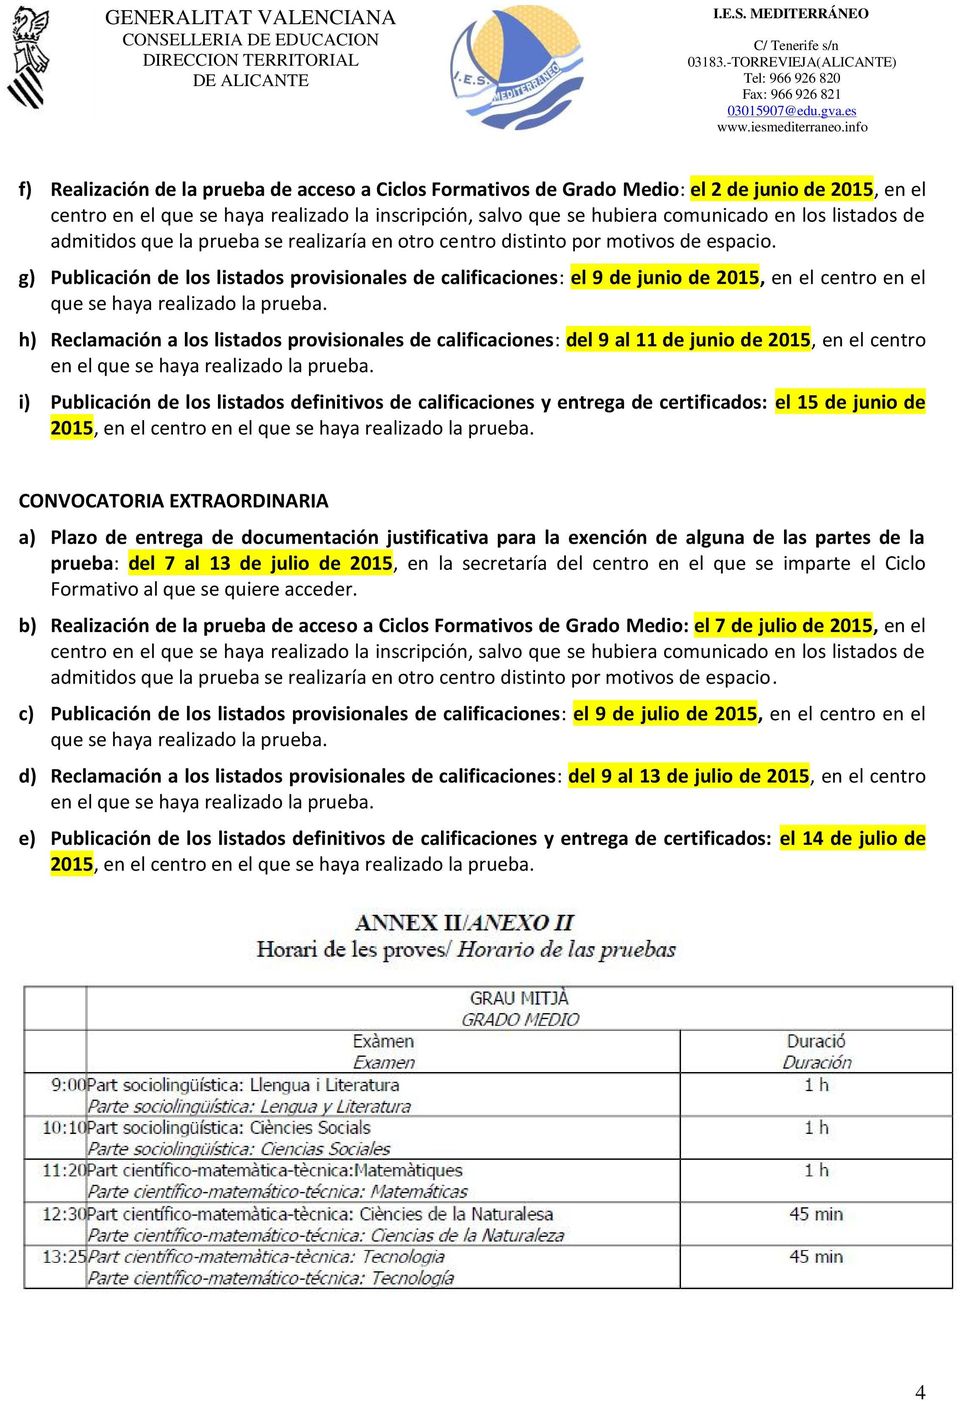 g) Publicación de los listados provisionales de calificaciones: el 9 de junio de 2015, en el centro en el que se haya realizado la prueba.